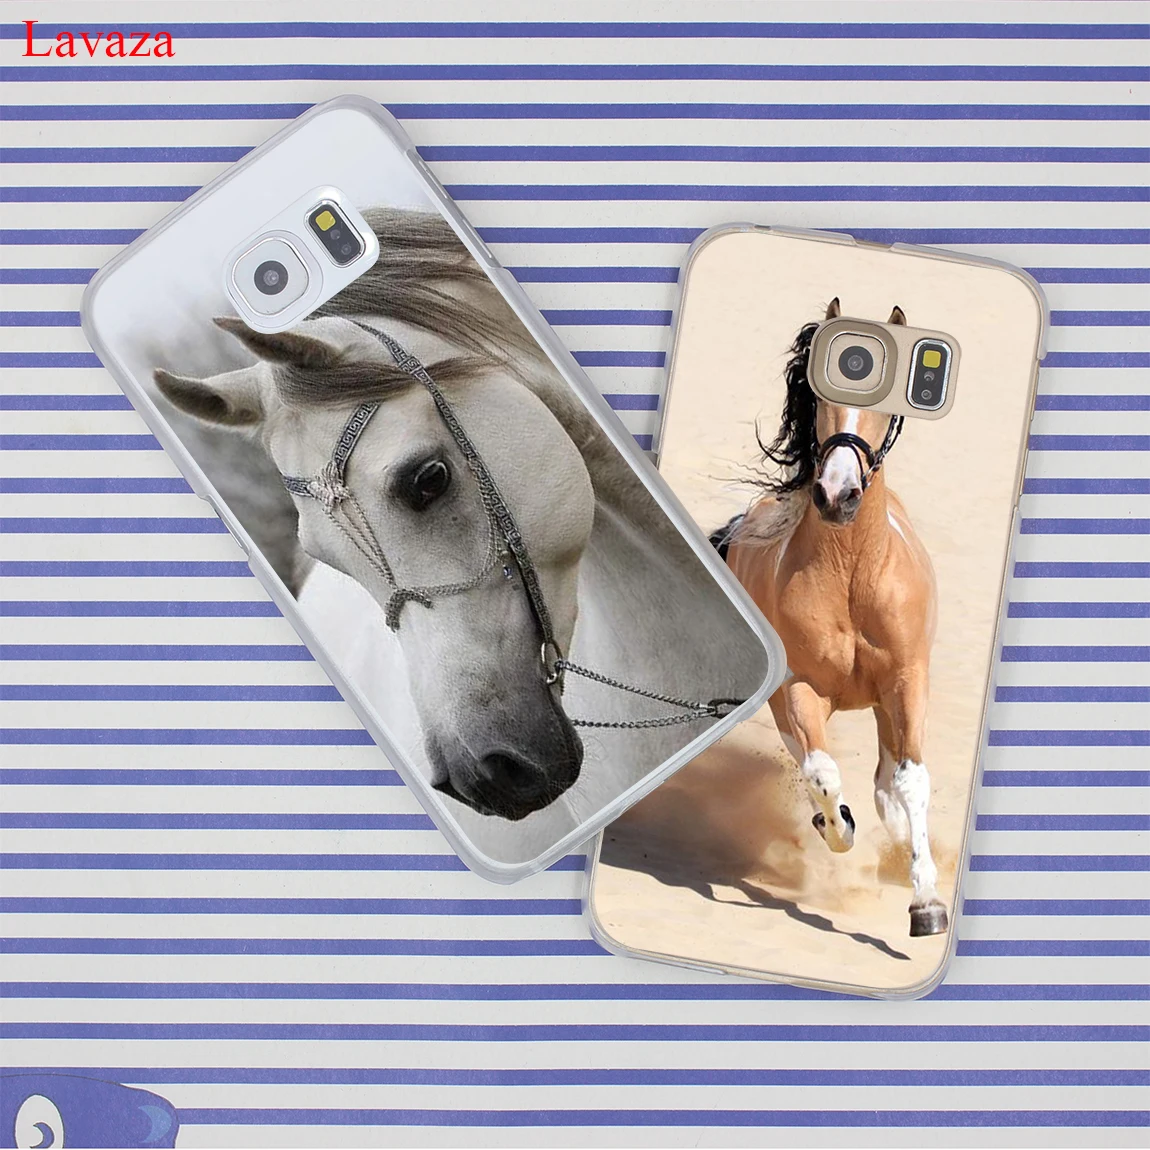 Жесткий прозрачный чехол для телефона Lavaza с акварельными лошадьми и бегущими лошадьми для samsung Galaxy S10 E S10E S8 S9 Plus S6 S7 Edge